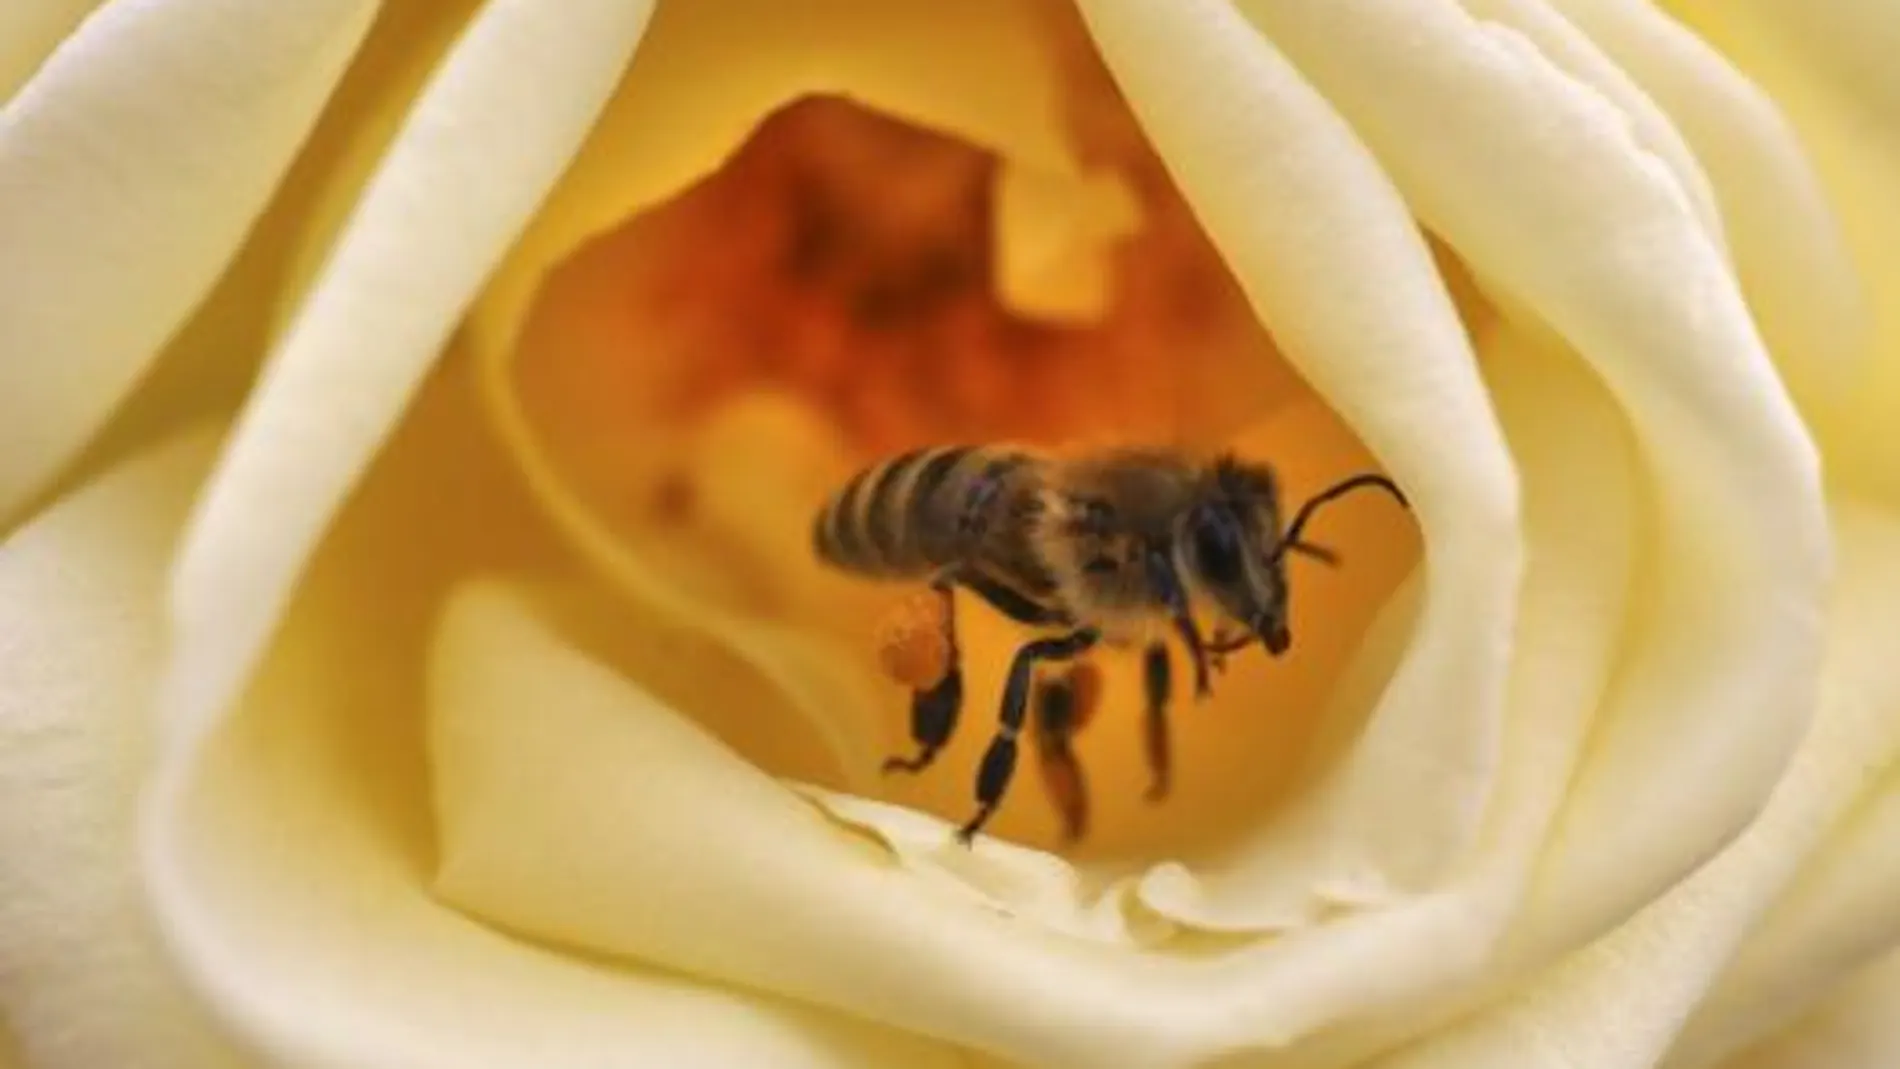 Descubren en España una avispa asiática que devora abejas